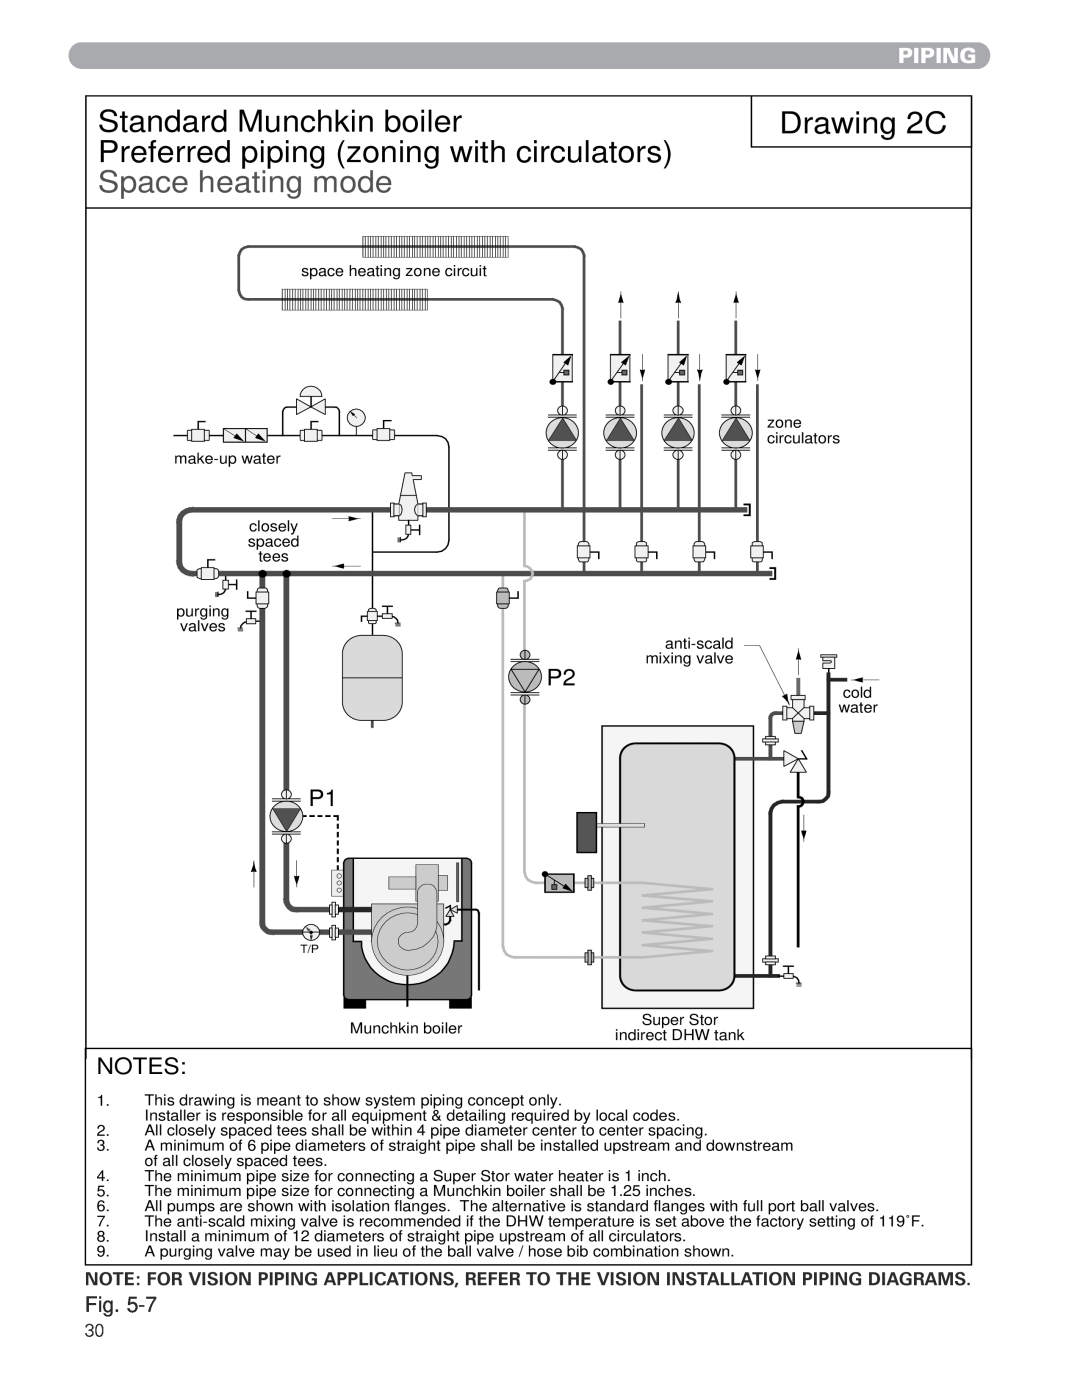 Munchkin MUNCHKIN HIGH EFFICIENCY HEATER with the "925" Controller manual Drawing 2C, Standard Munchkin boiler, Piping 